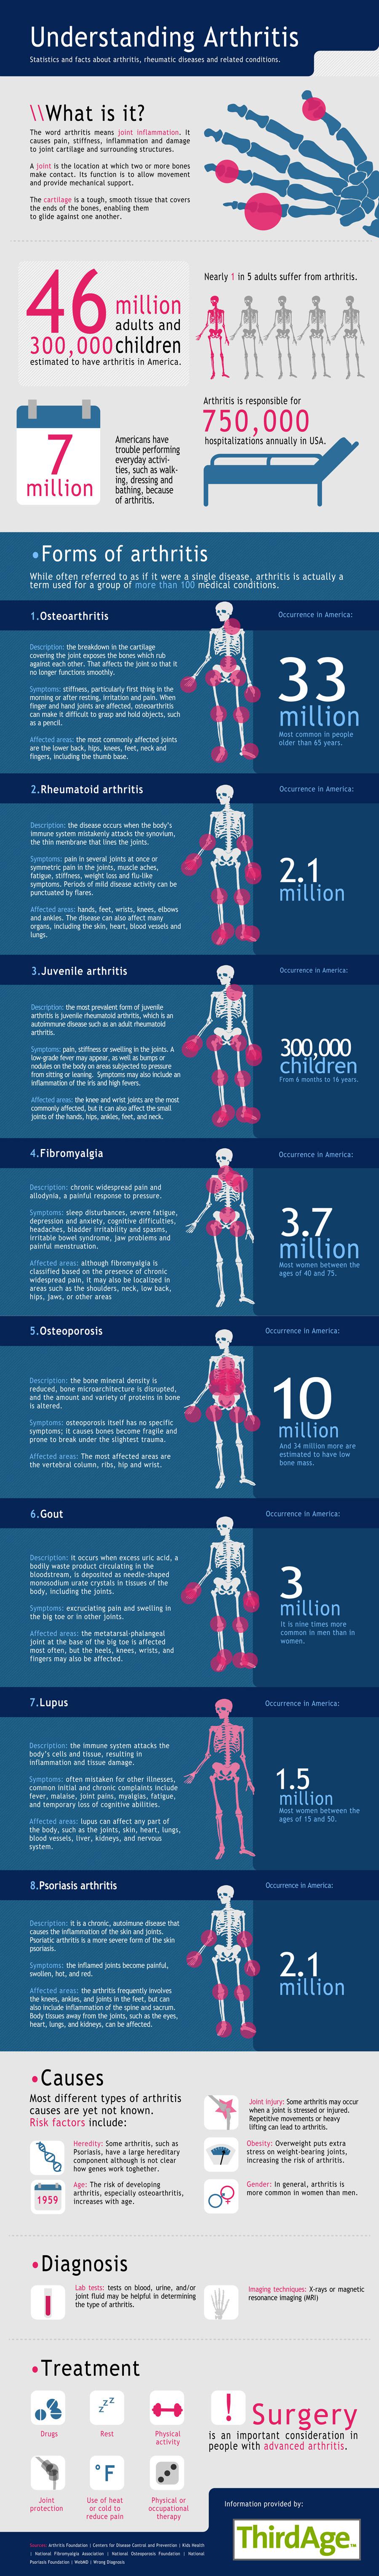 Une infographie pour comprendre les différentes formes d’arthrite